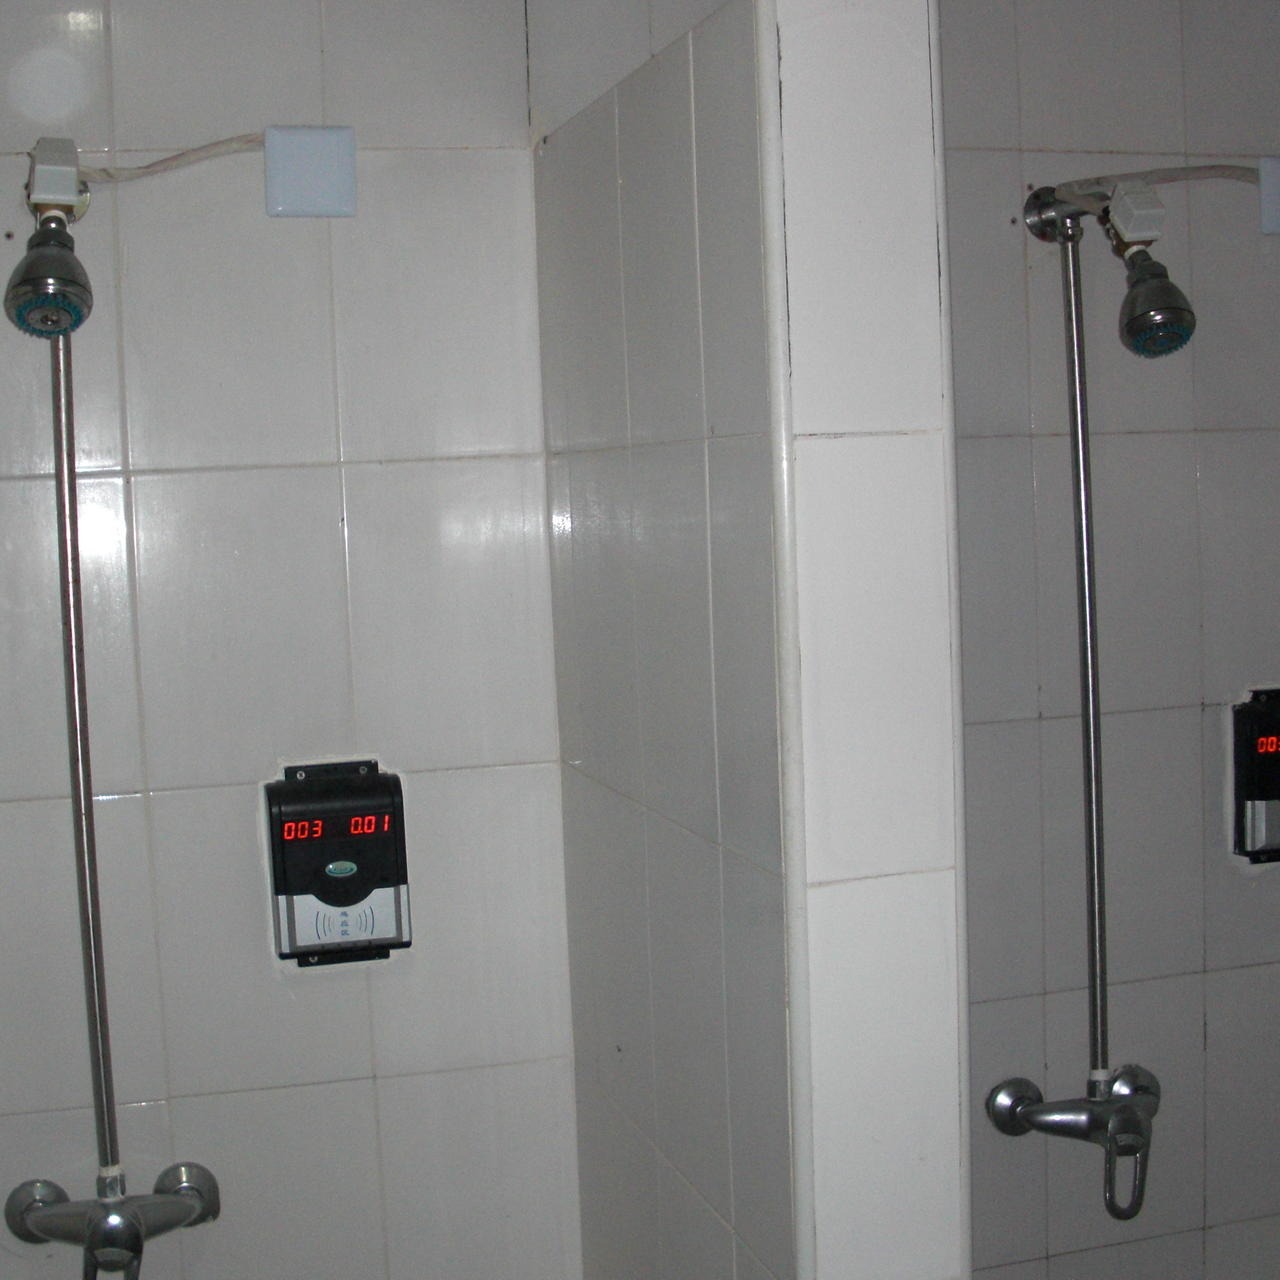 兴天下HF-660洗澡刷卡水控系统.IC淋浴水控器,学校浴室控水器